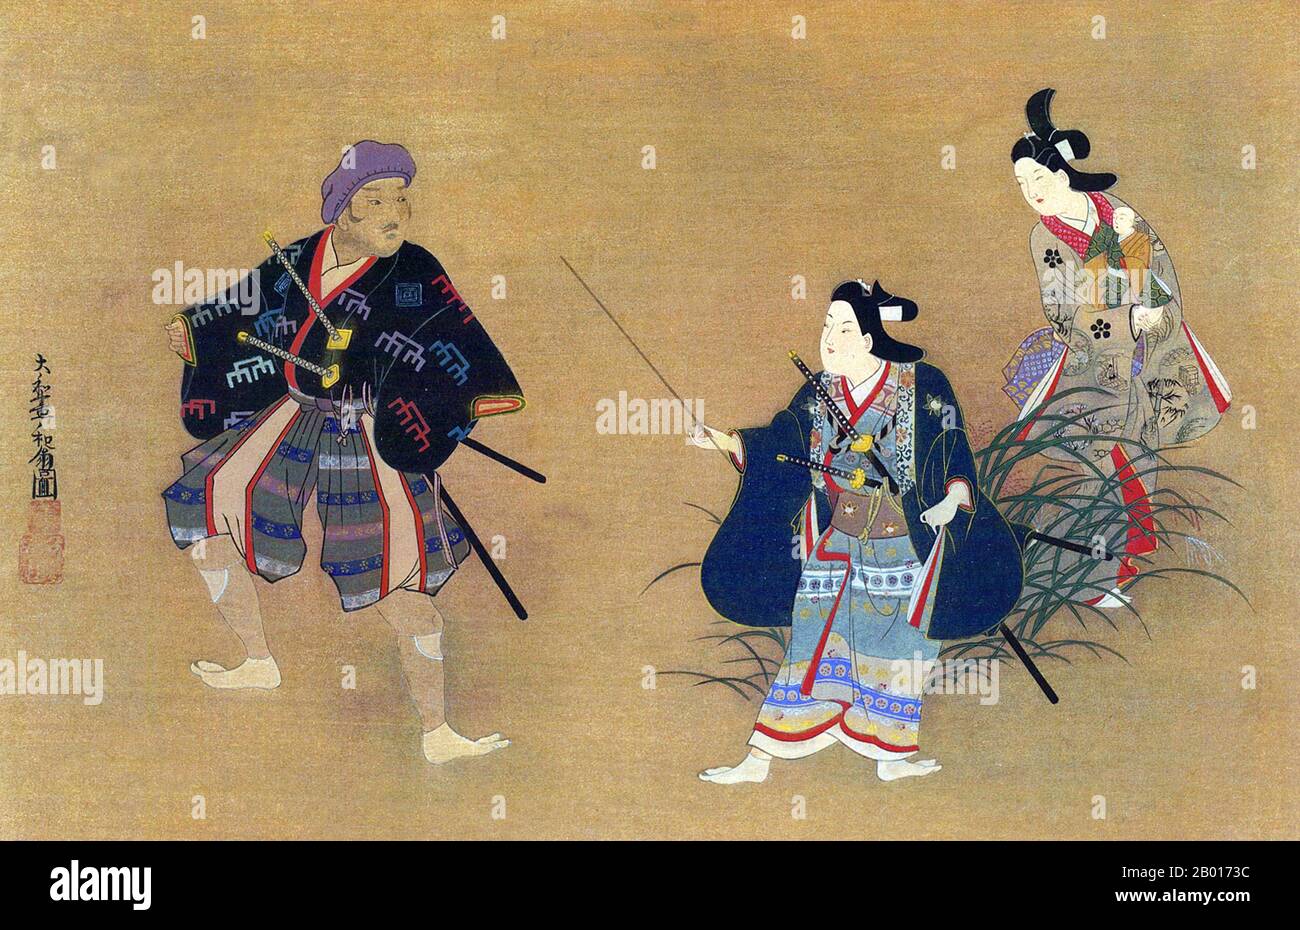 Japan: „Theaterszene“. Handscroll Gemälde von Hishikawa Morofusa (aktive c. 1685-1715), c. 1700. Yamato-e ist ein Stil der japanischen Malerei, inspiriert von Gemälden der Tang-Dynastie und entwickelt in der späten Heian-Zeit. Es gilt als der klassische japanische Stil. Aus der Muromachi-Zeit (15th. Jahrhundert) wurde der Begriff Yamato-e verwendet, um Arbeiten von zeitgenössischen chinesischen Malereien (kara-e) zu unterscheiden, die von den Gemälden des Zen-Buddhismus der Song- und Yuan-Dynastie inspiriert wurden. Stockfoto